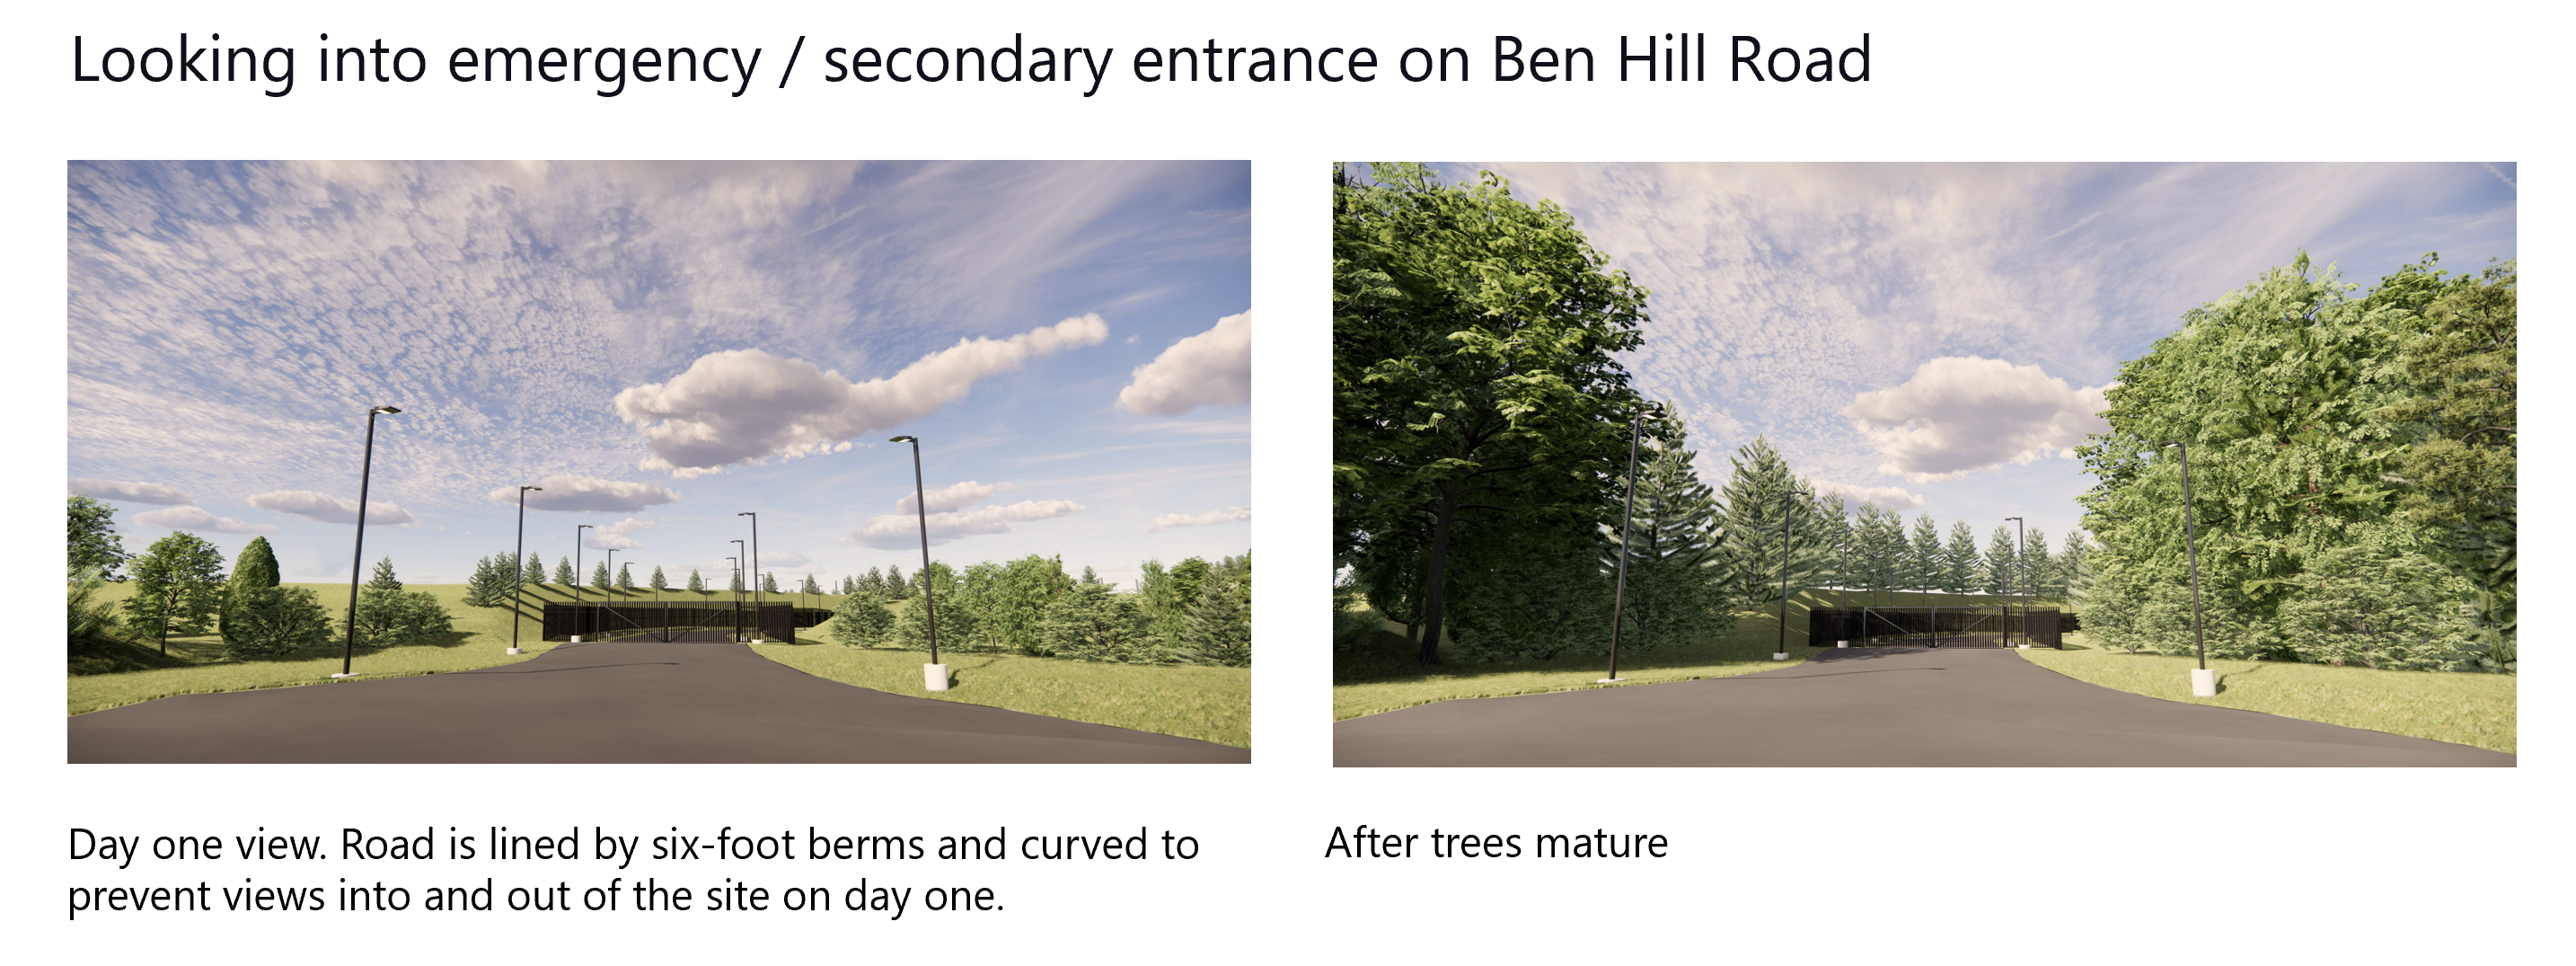 Kijkend naar nooduitgang op Ben Hill Road